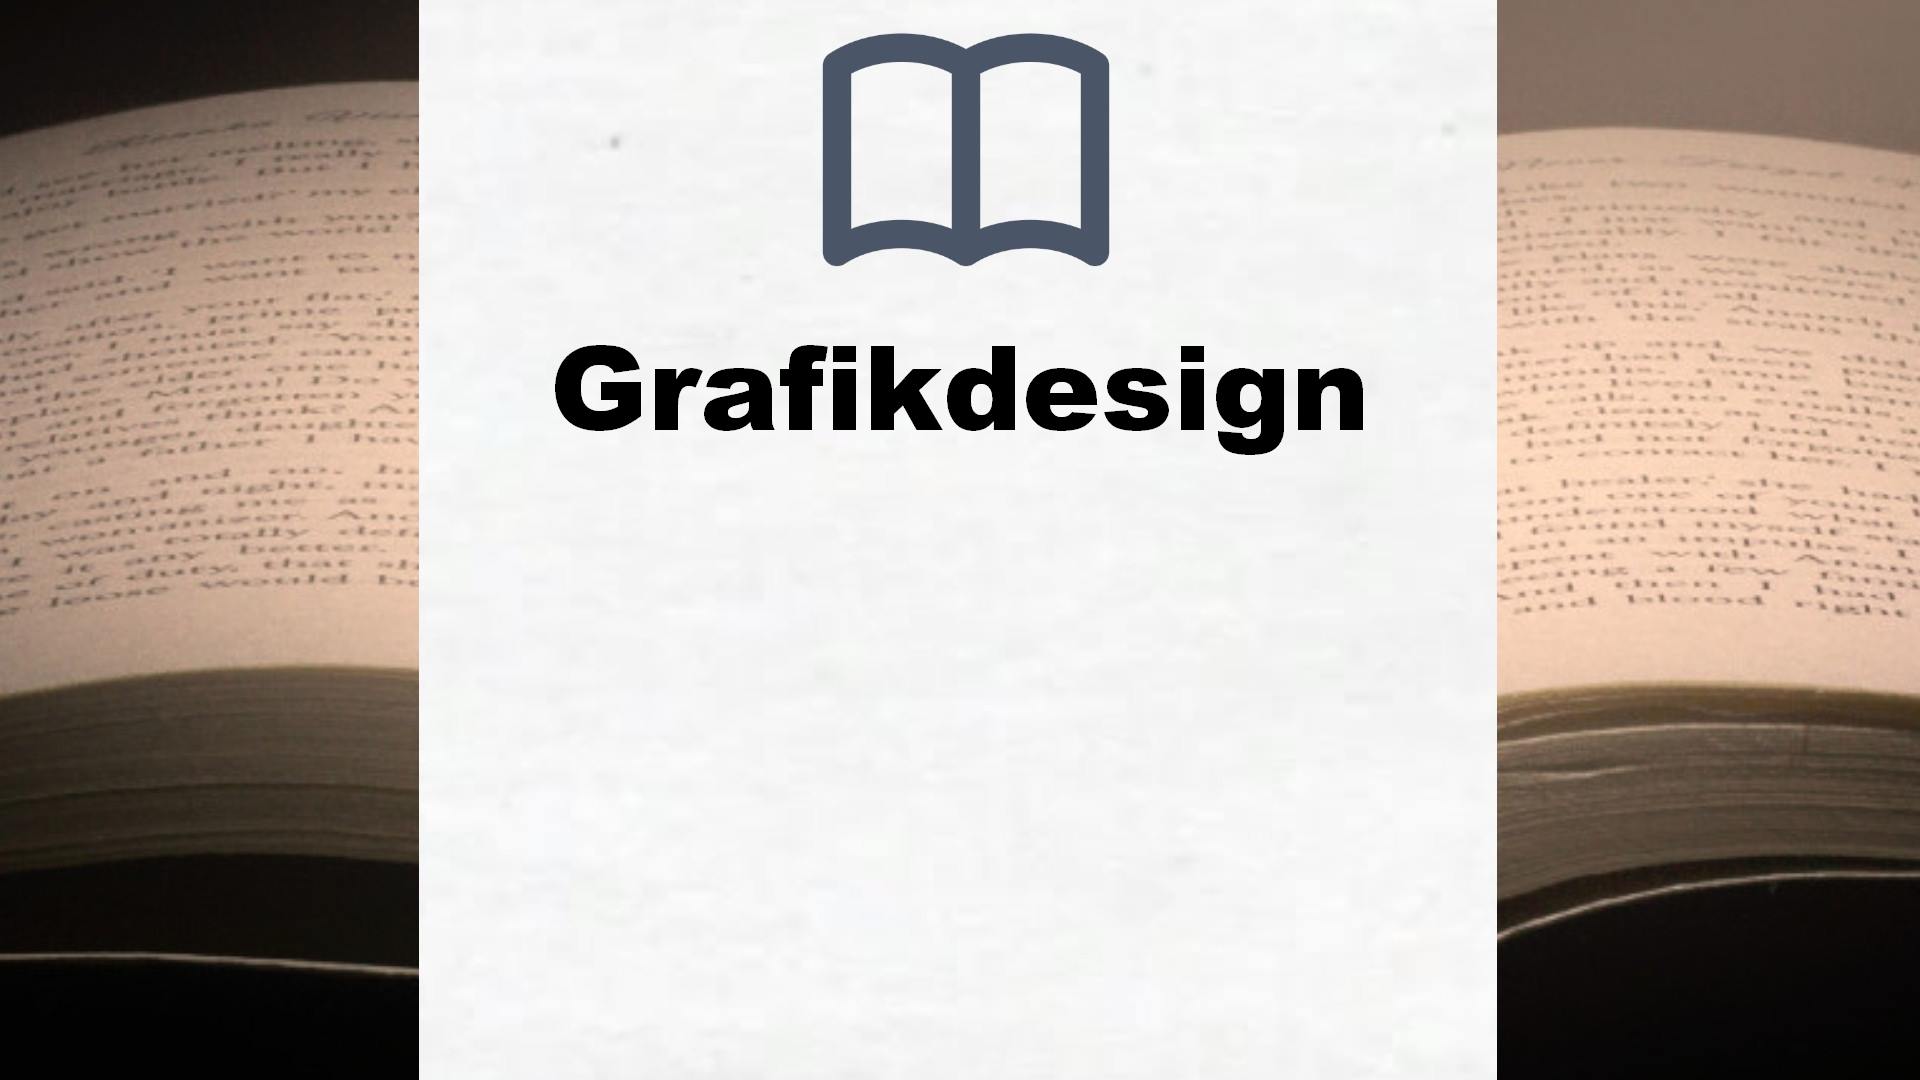 Bücher über Grafikdesign